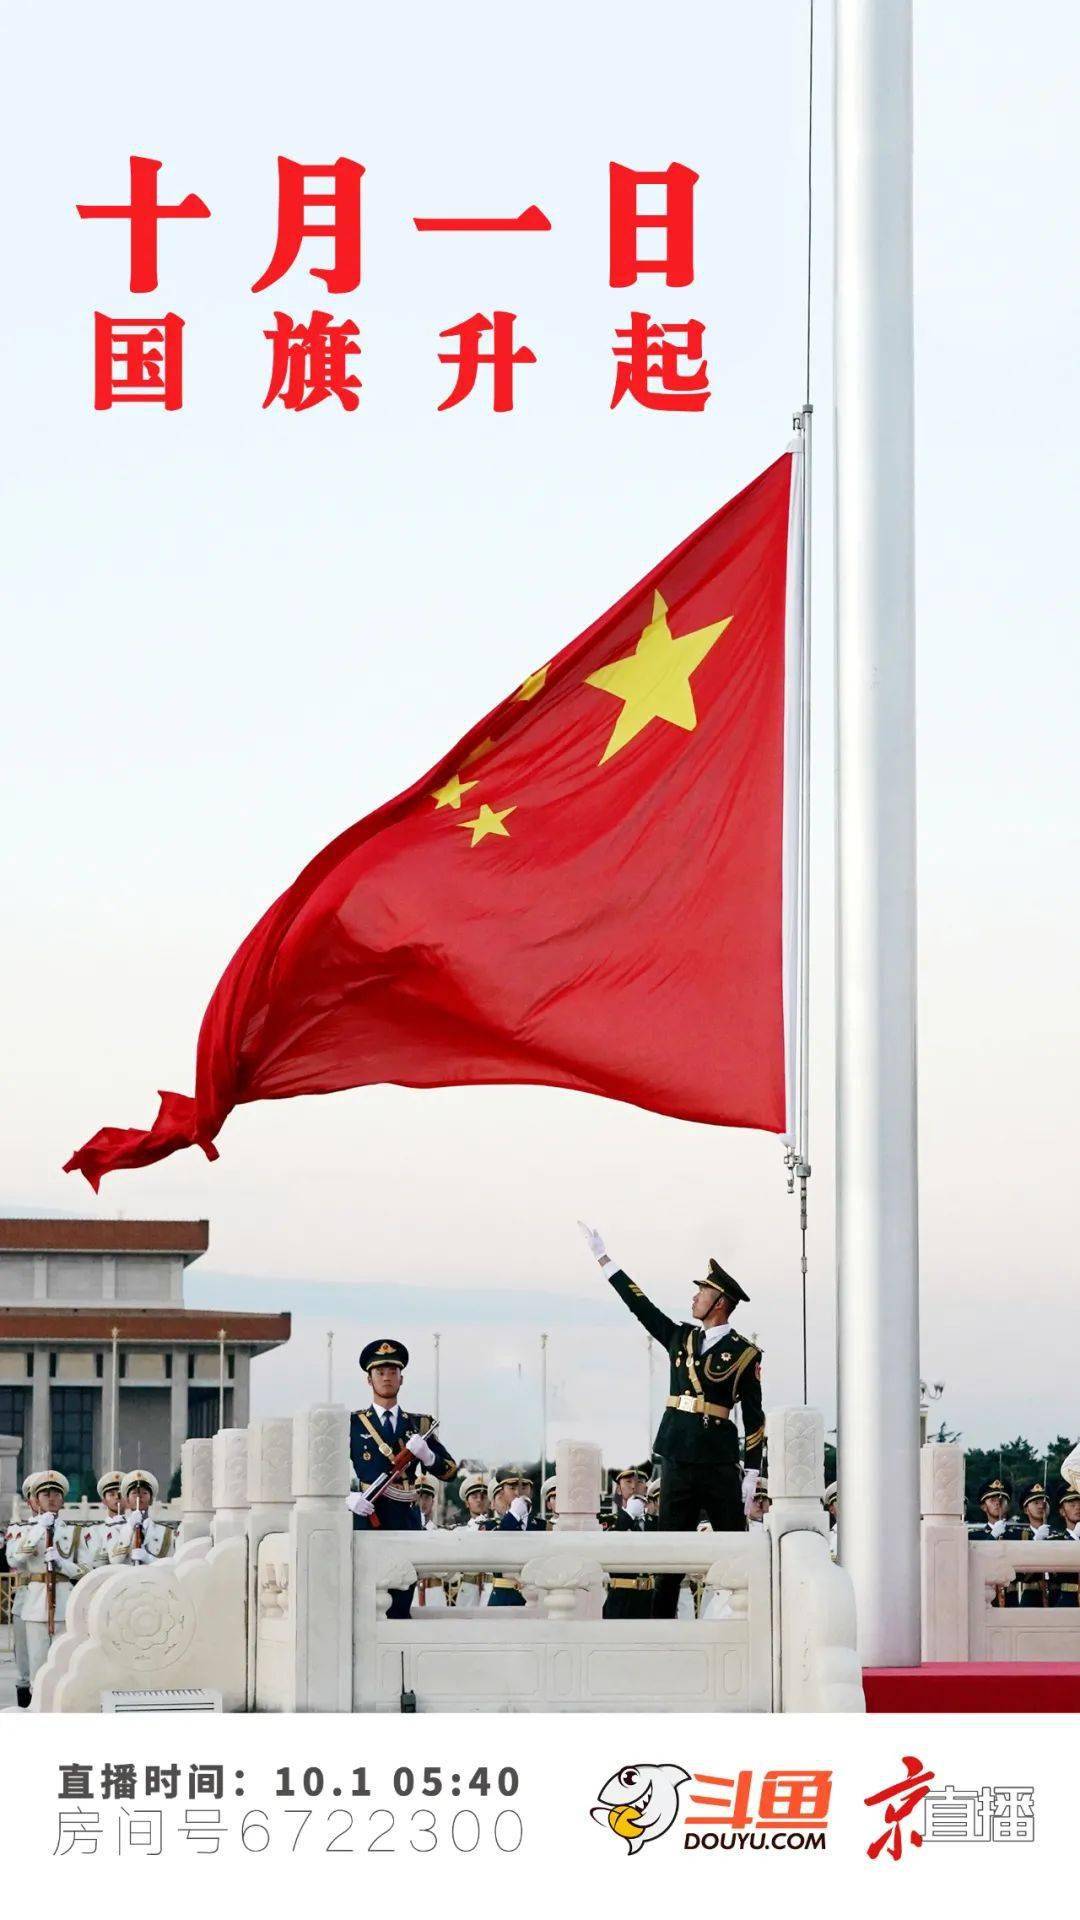 全国各地的人们将共聚北京天安门广场,见证这庄严,隆重的升国旗时刻